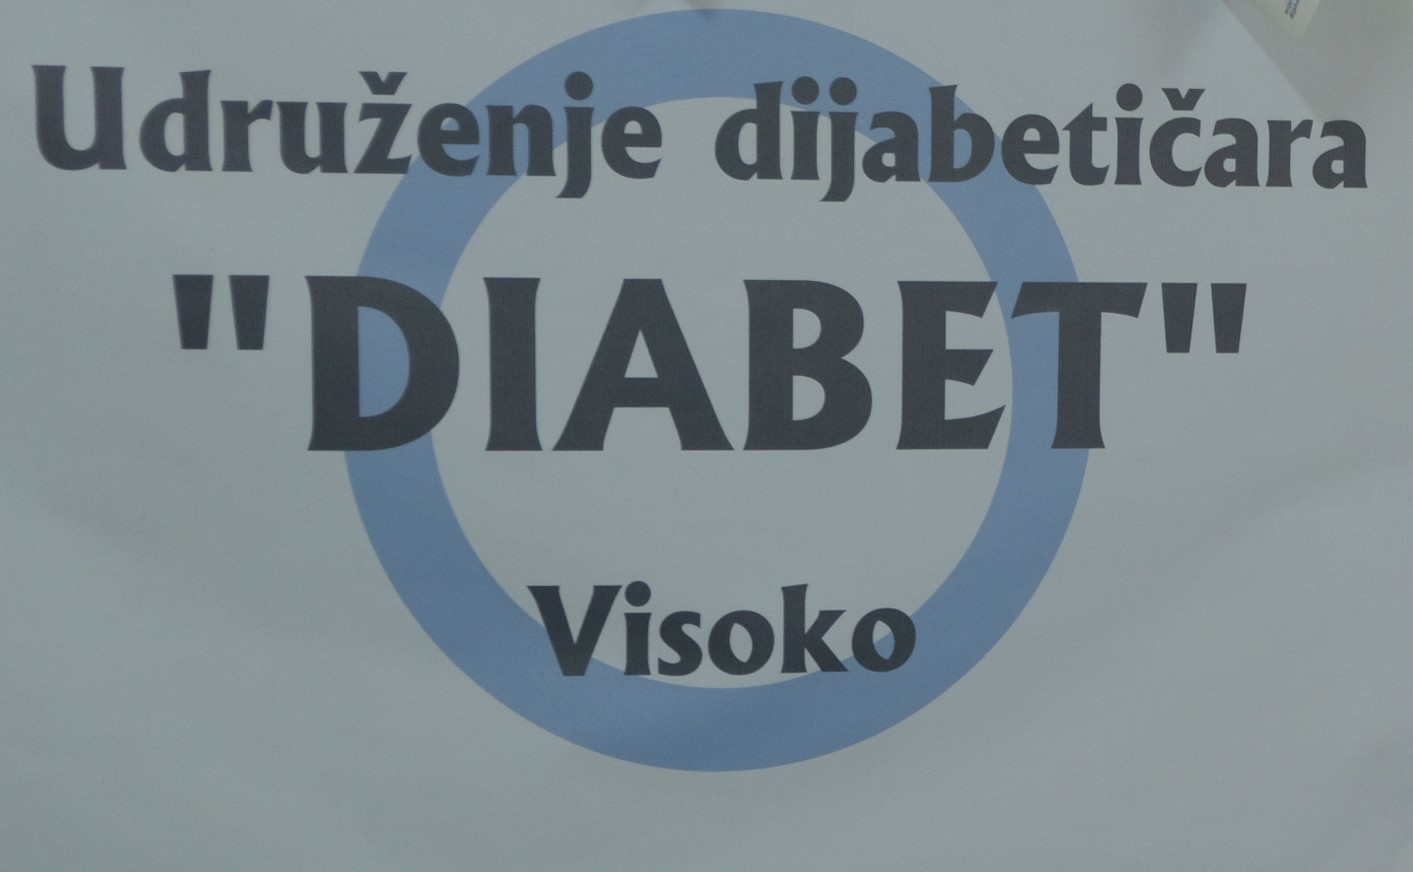 Udruženje dijabetičara “Diabet” organizuje predavanje